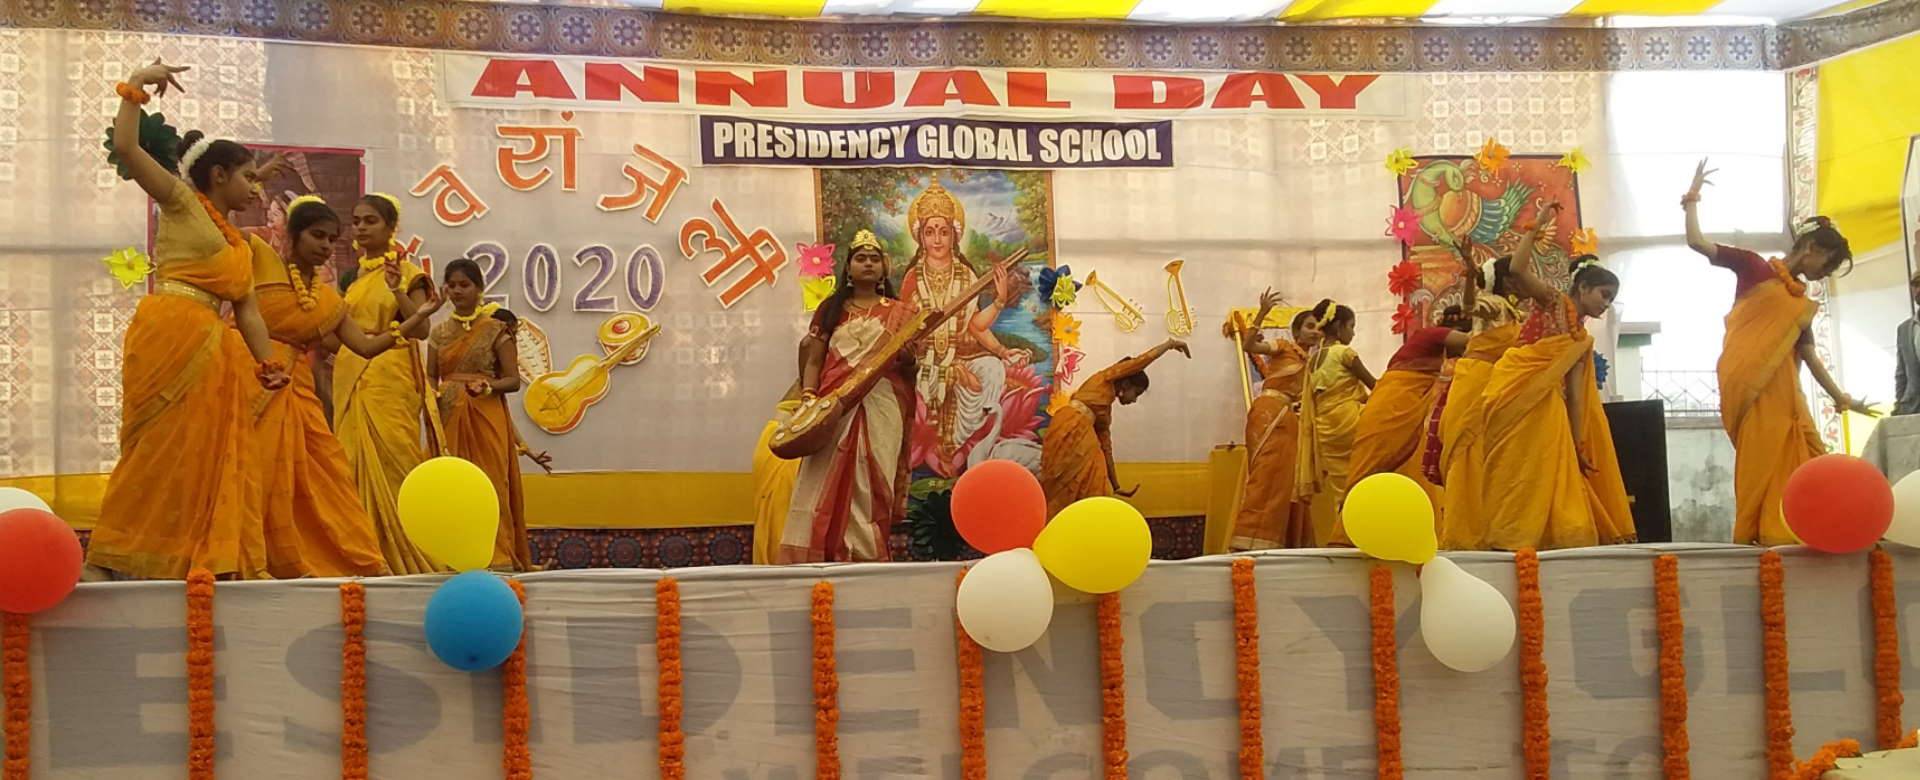 Presidency Global School Event